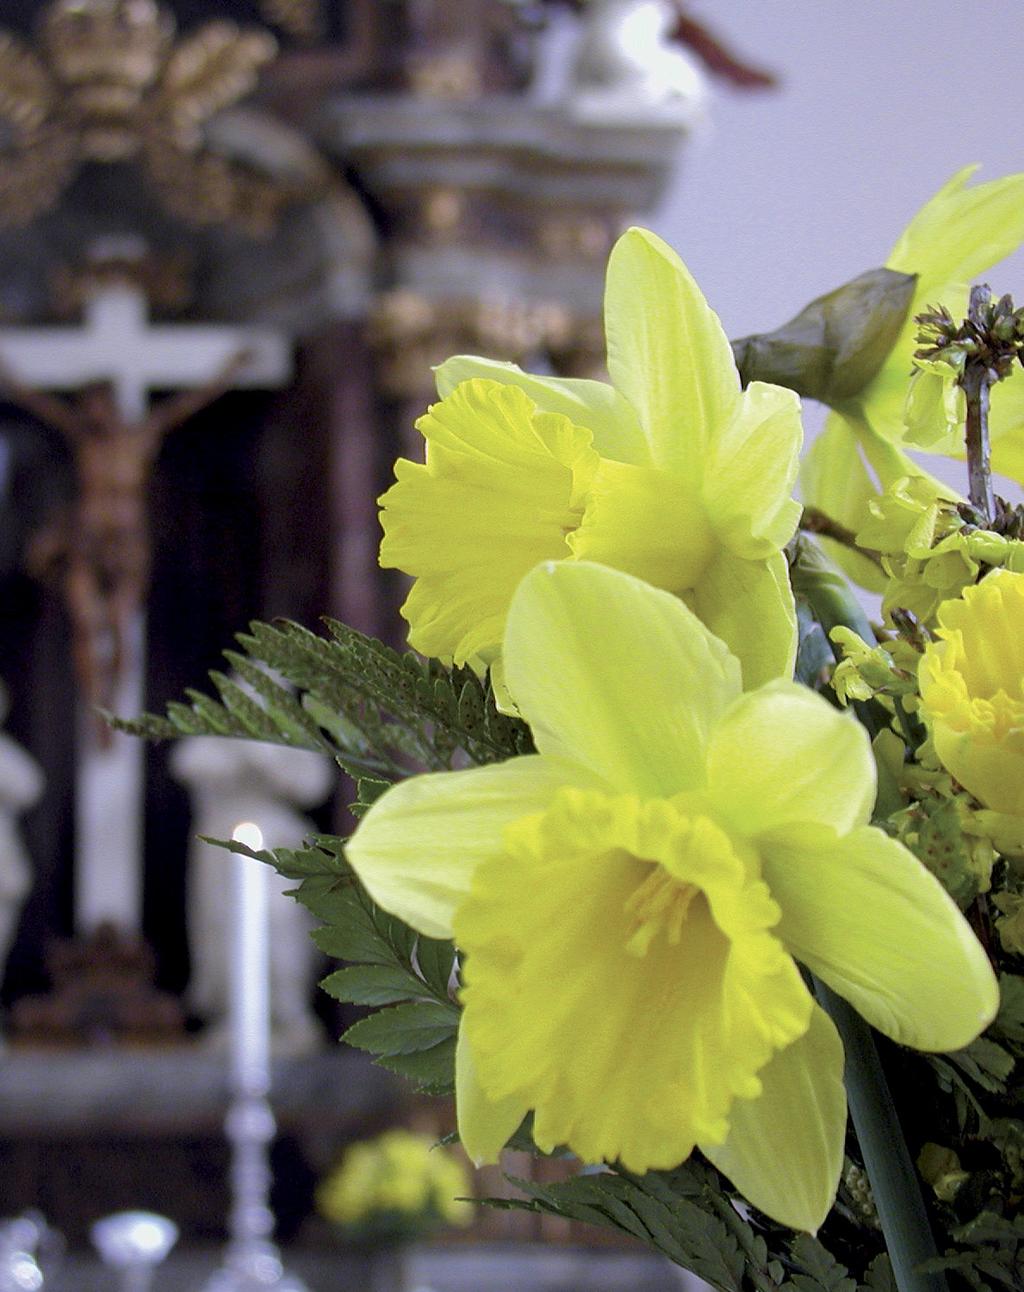 PÅSKEN I TRINITATIS Trinitatis Kirke fejrer påsken med passionskoncerter, gudstjenester og fællesspisning. Fra Palmesøndag til 1. påskedag. Palmesøndag 25. marts Kl. 10.